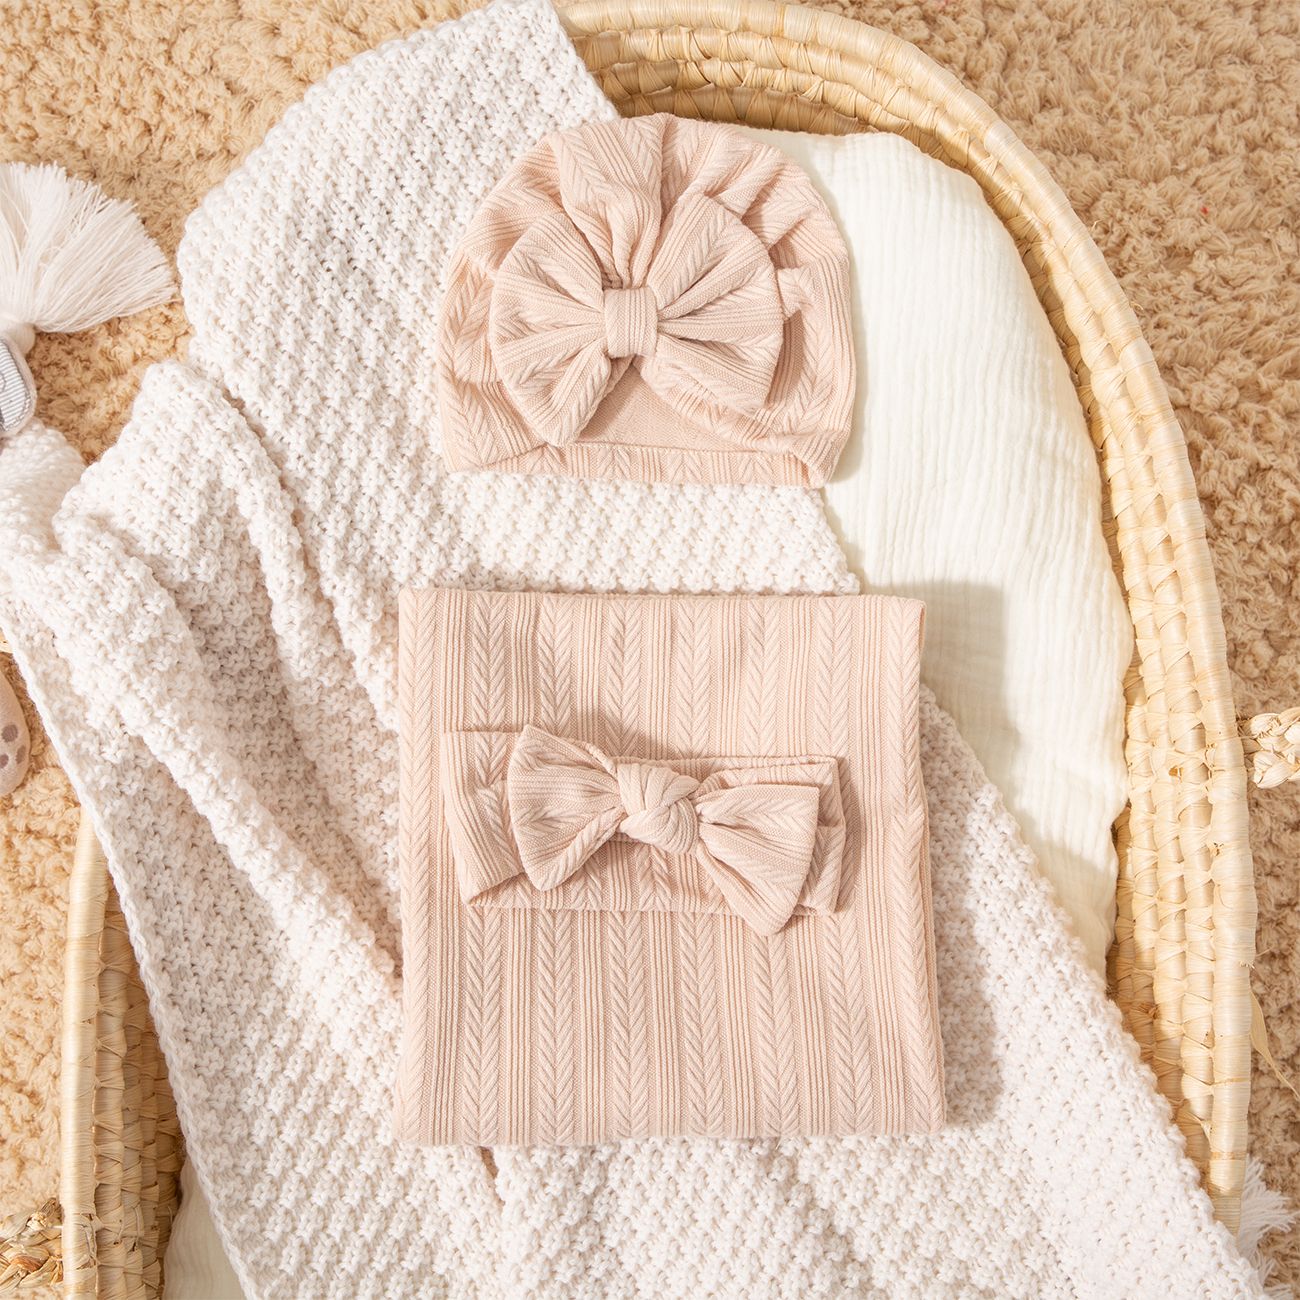 3 Pcs Cotton Baby Swaddle Blanket Set Avec Des Motifs De Texture Uniques